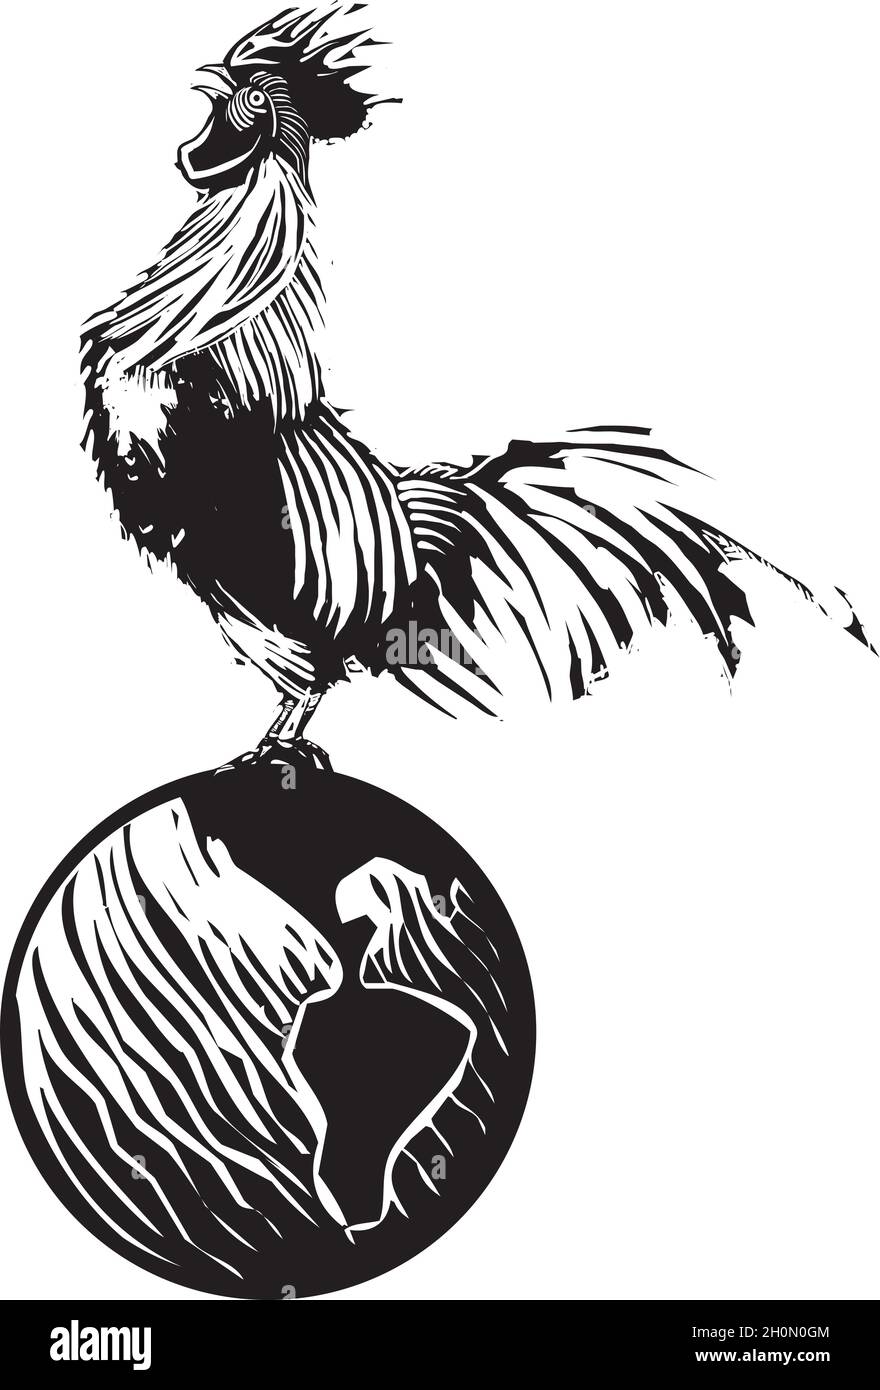 Croquizado de gallos de granja de madera por la mañana Ilustración del Vector